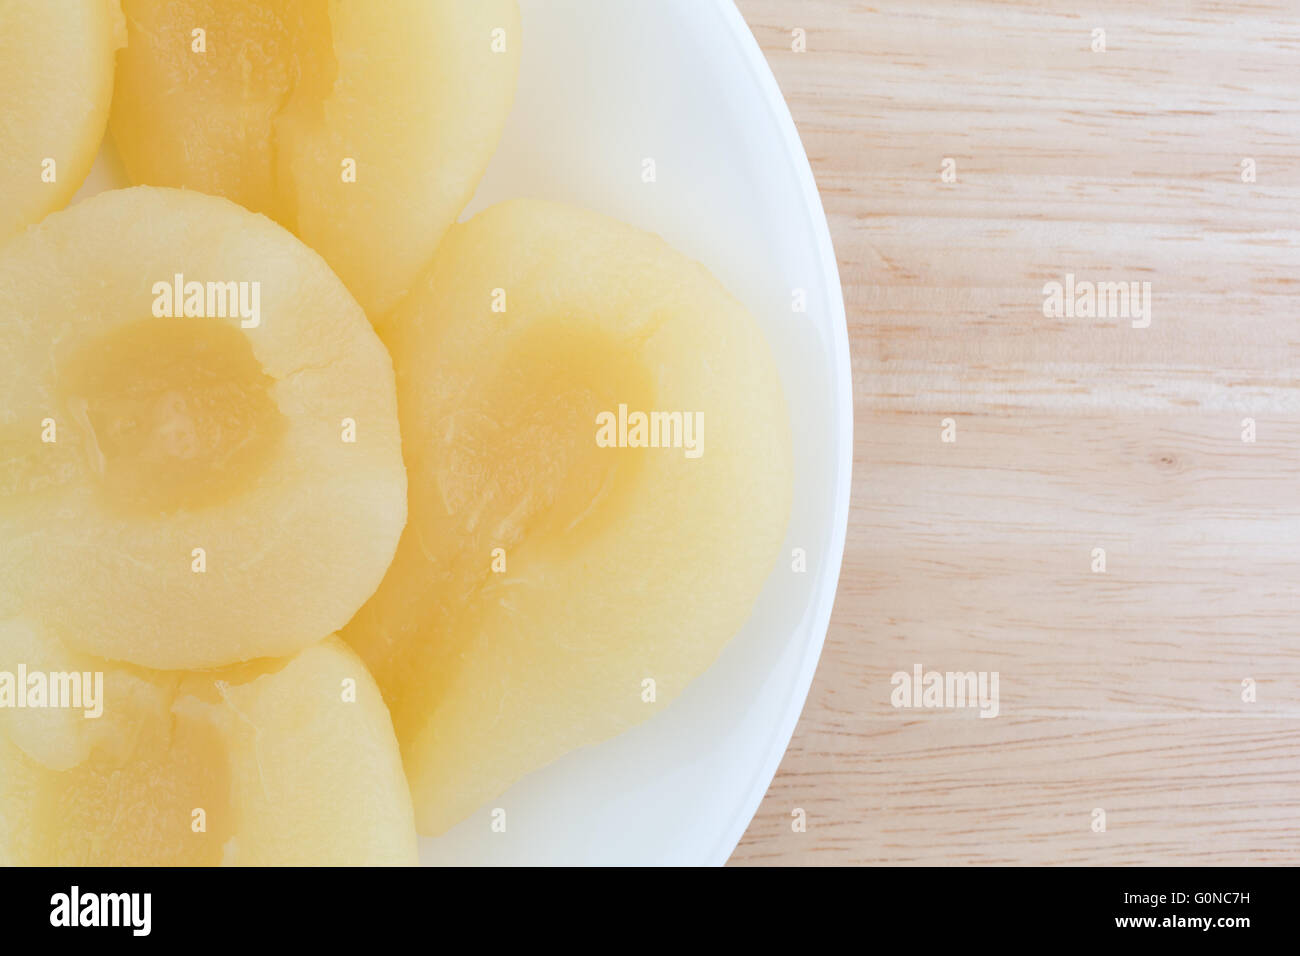 Haut fermer avis de plusieurs moitiés de poires sur une assiette blanche au sommet d'une table en bois. Banque D'Images